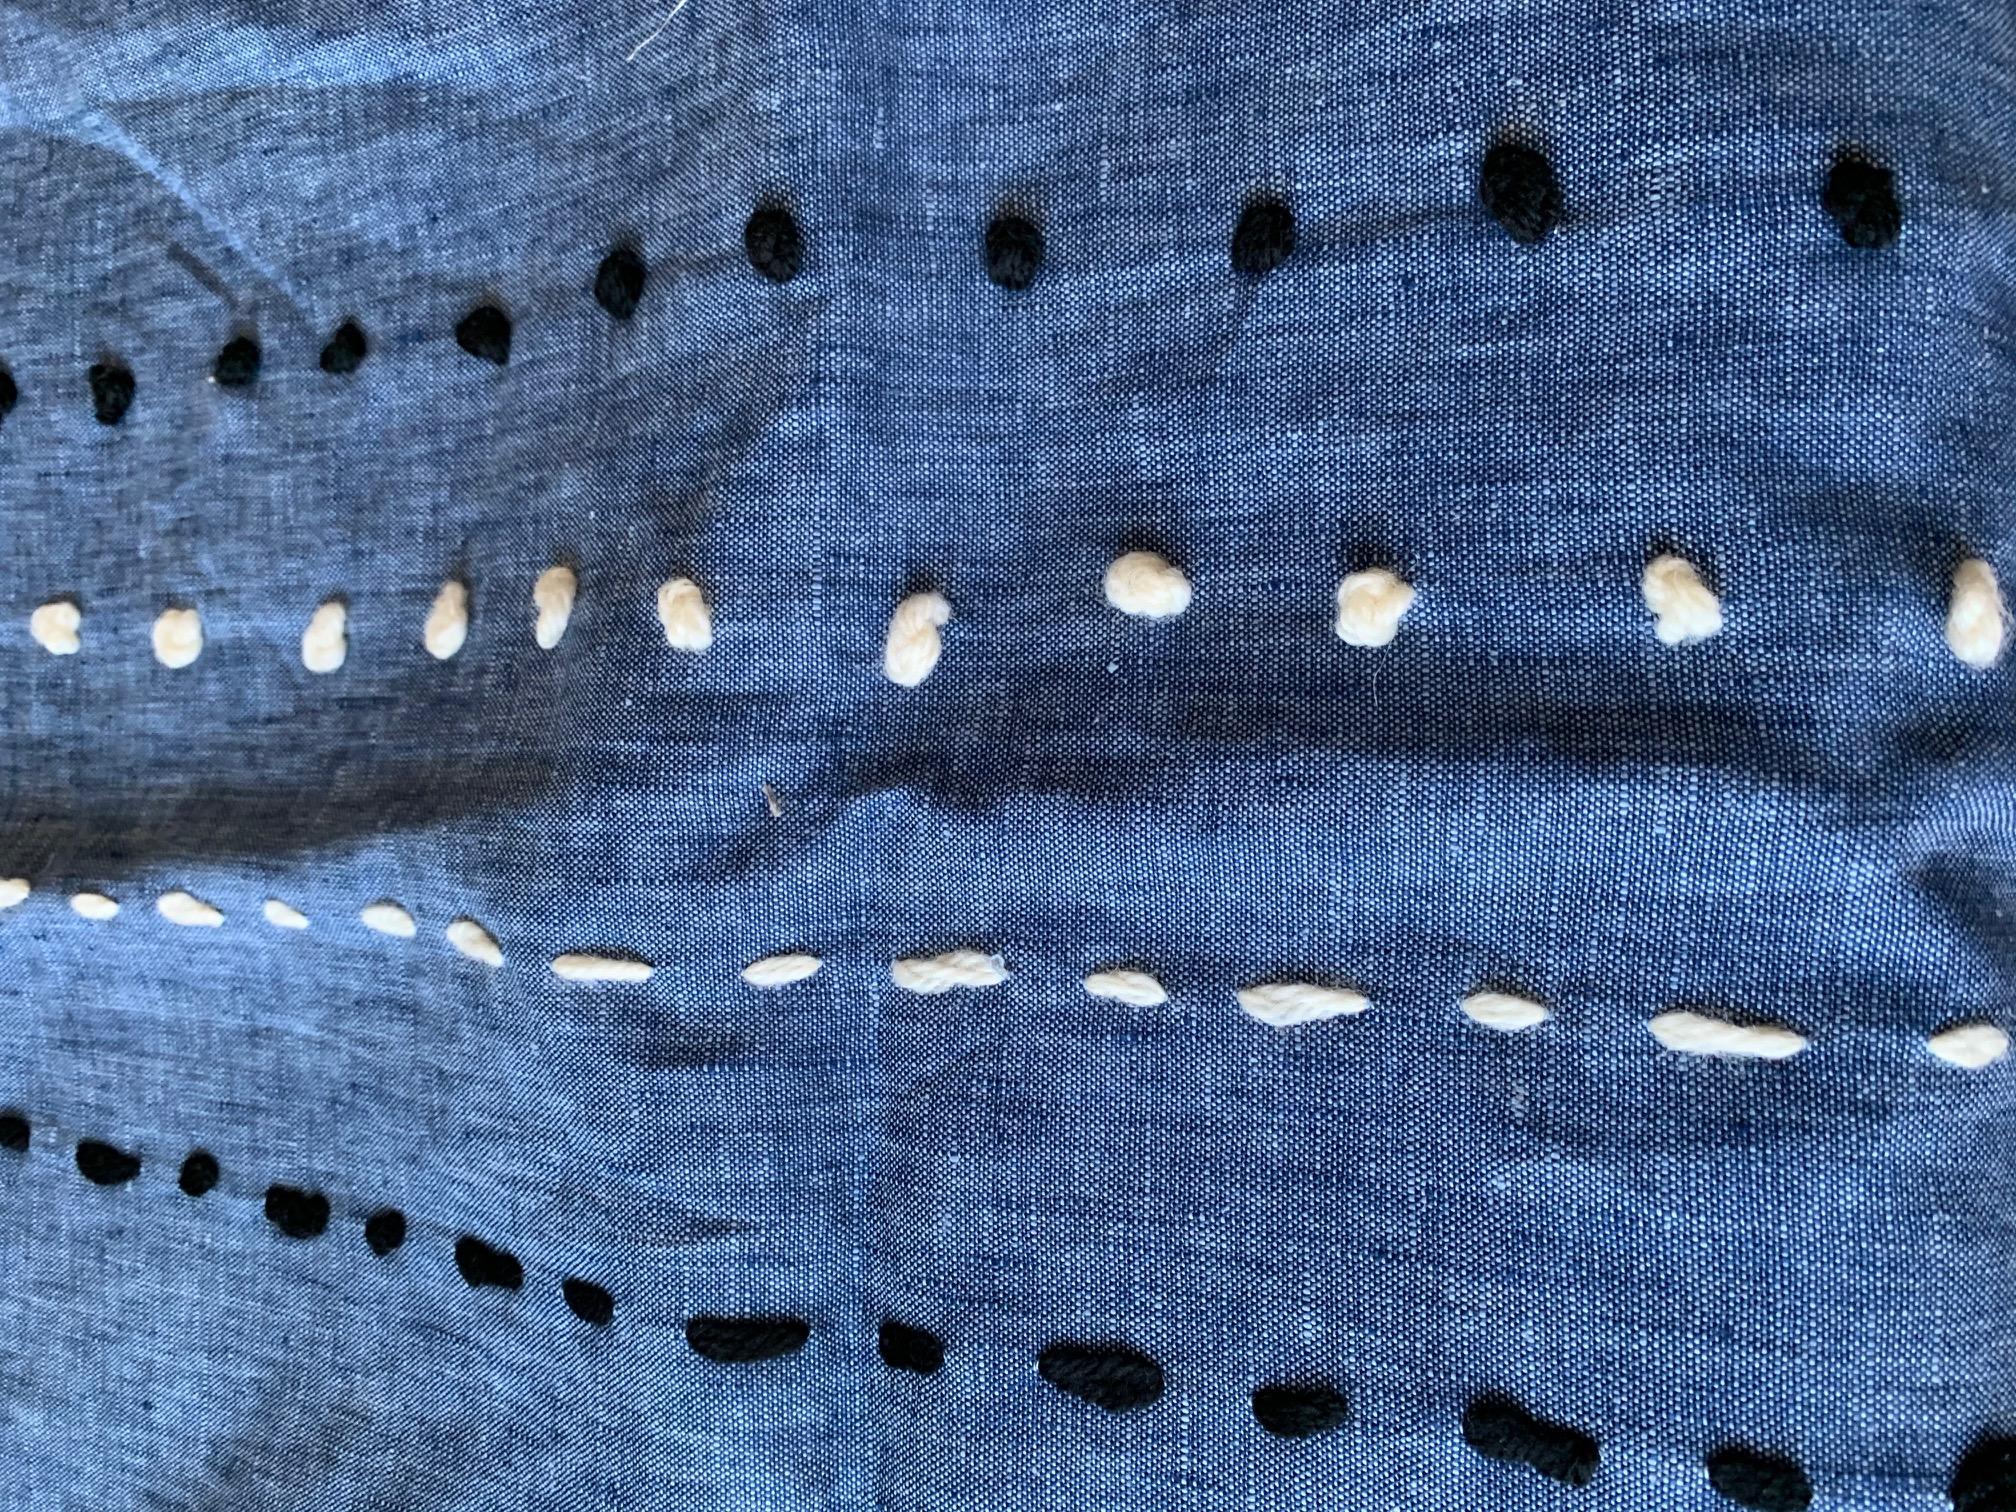 Diese zarte Freihandtechnik ist von der traditionellen japanischen Stickerei abgeleitet, die Bewegung, Fluss und die organische Zusammensetzung der Natur symbolisiert.

Einsatz aus Daunenfedern, Zip-Verschluss

--
Das Maki Yamamoto Textile Studio